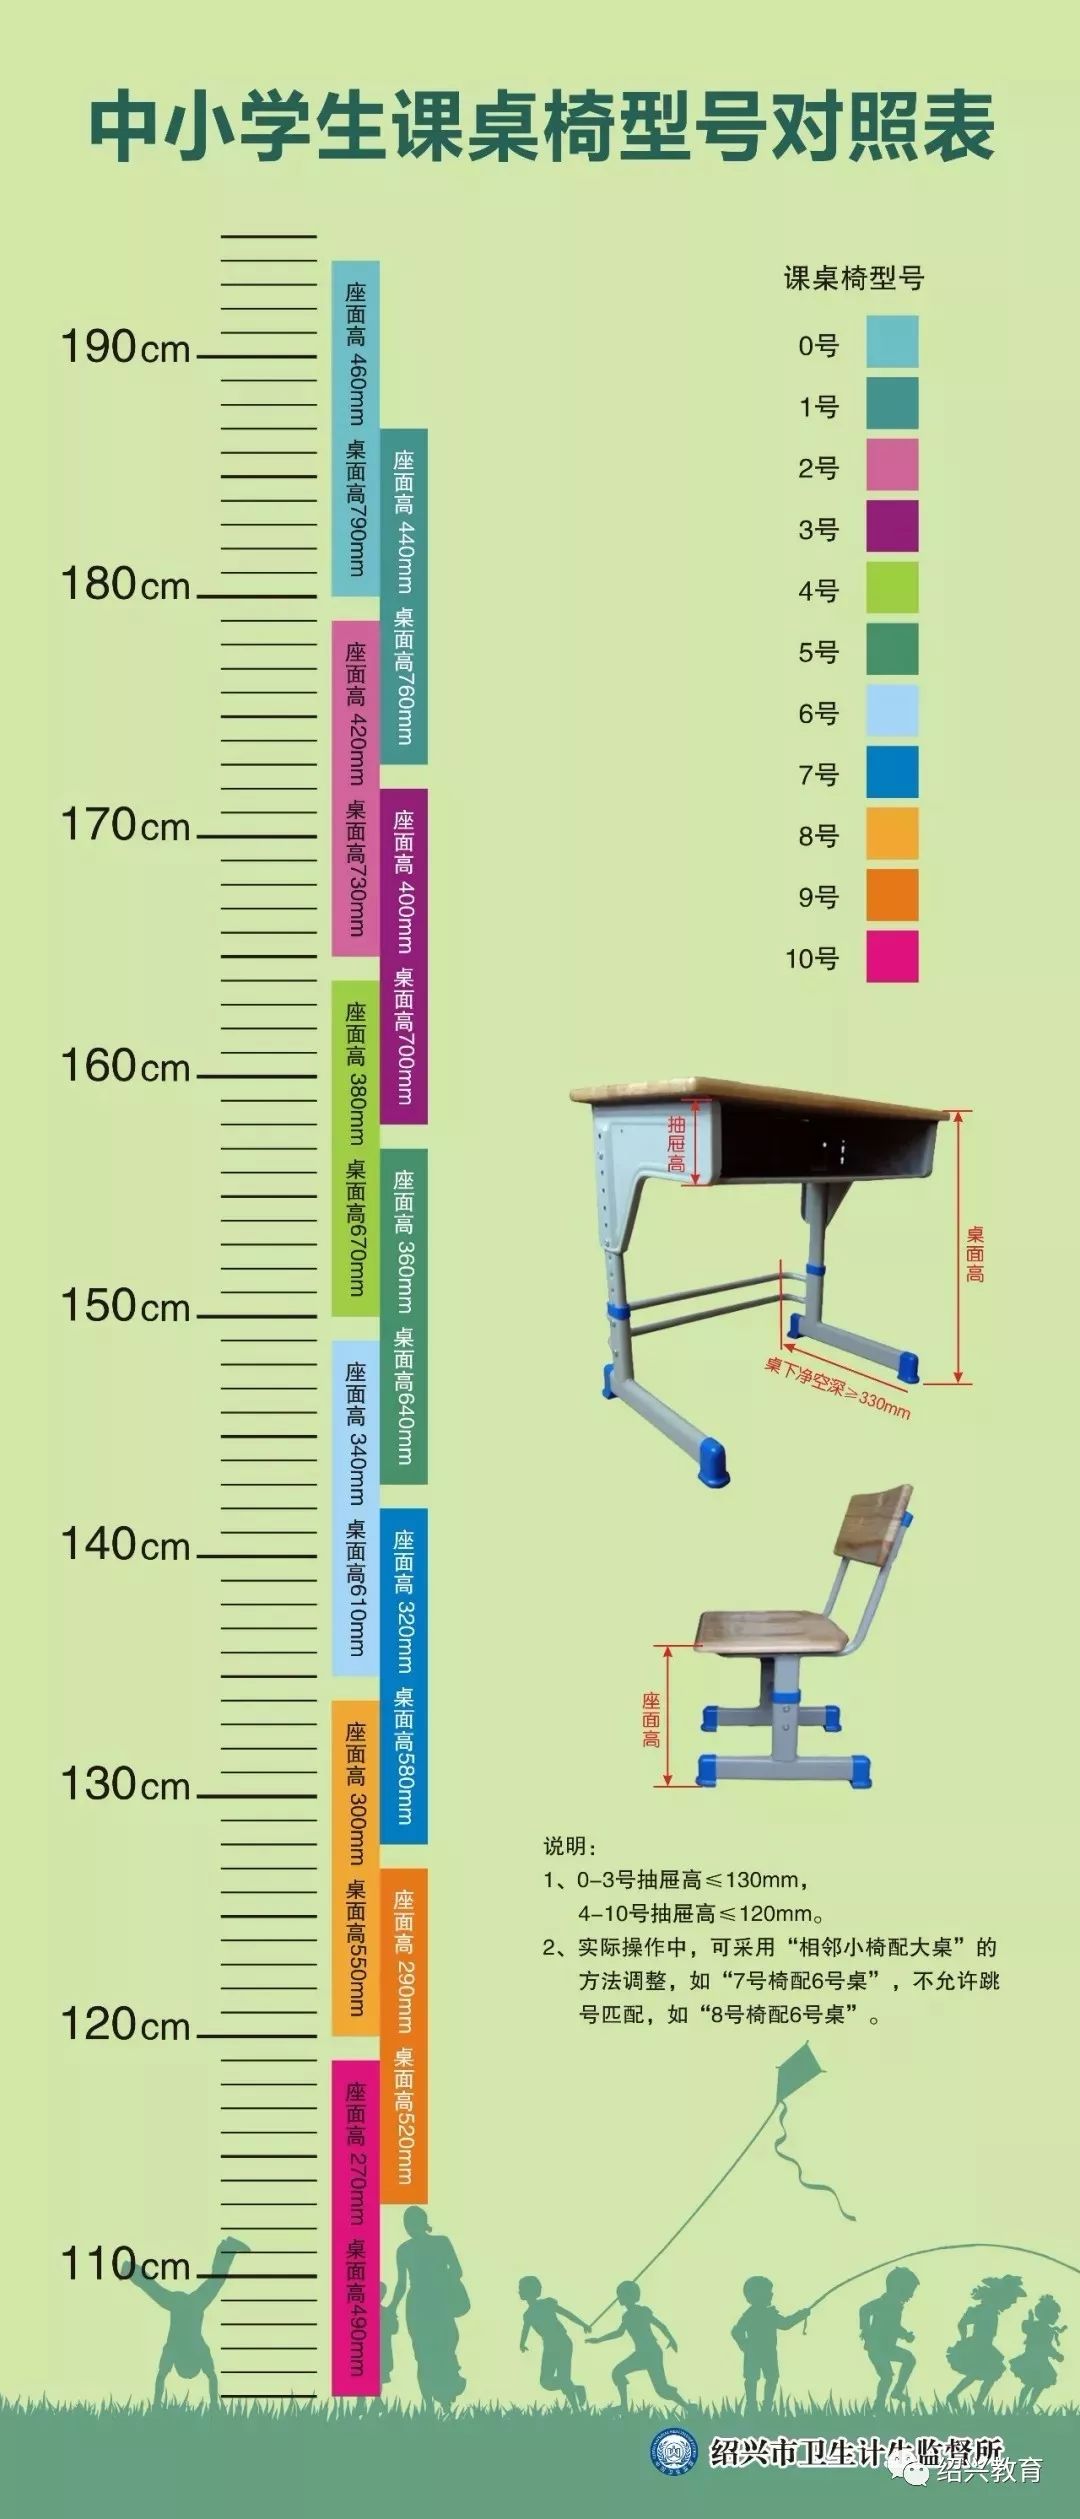 如何选择合适的课桌椅?这份选购指南很有用